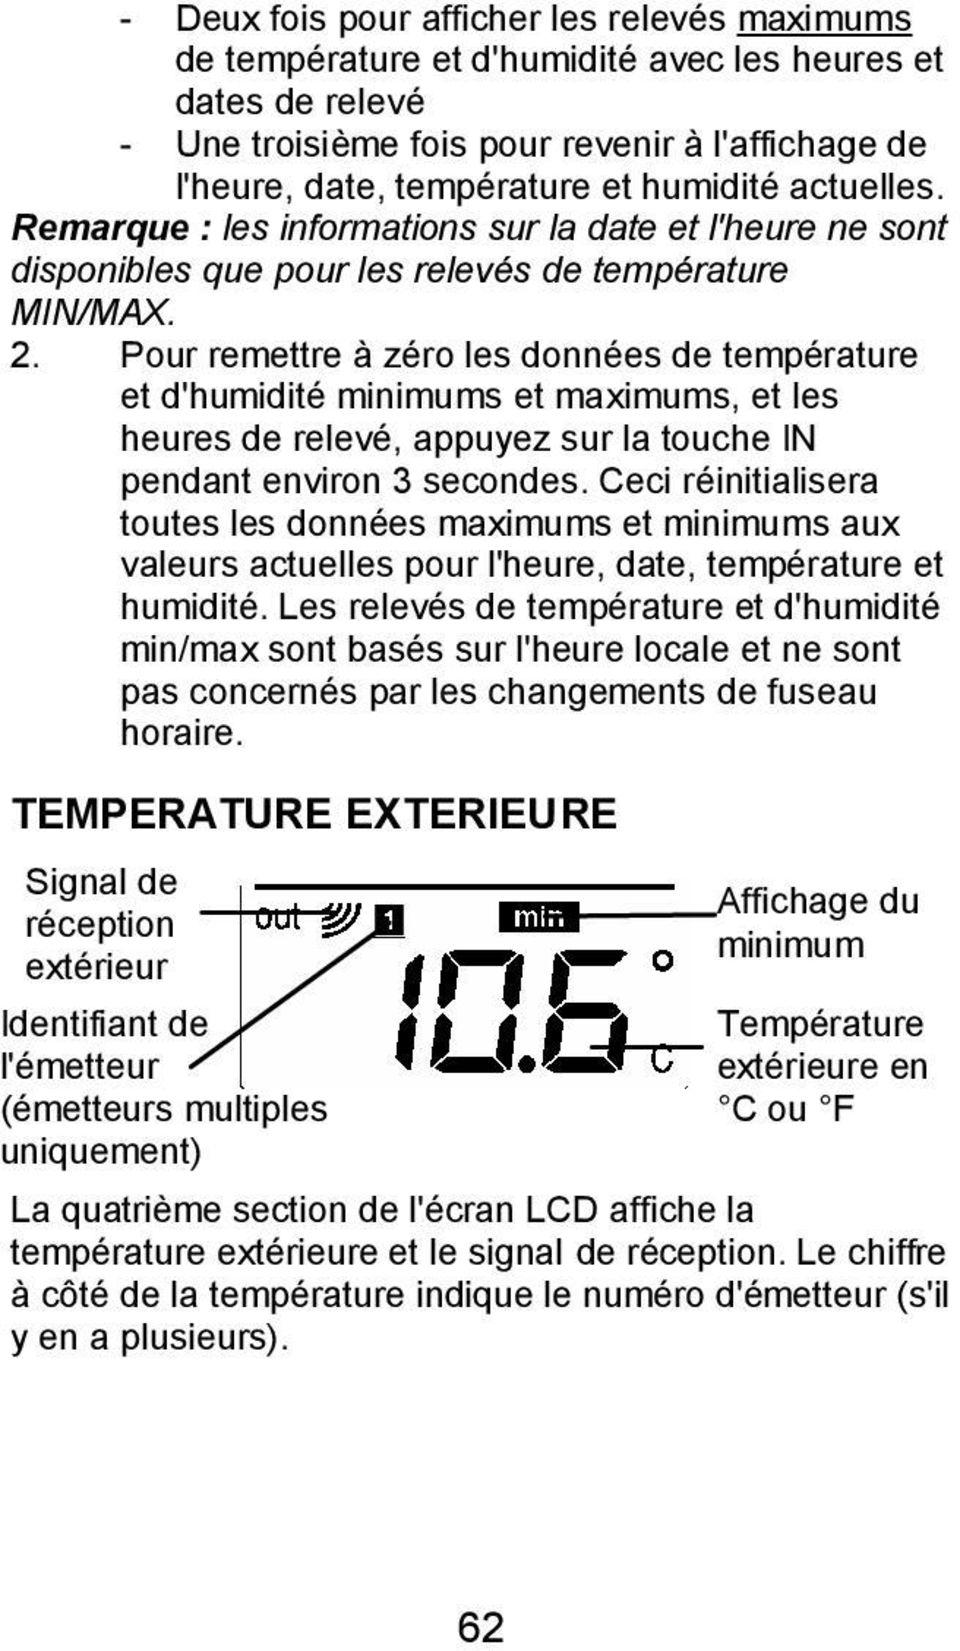 Pour remettre à zéro les données de température et d'humidité minimums et maximums, et les heures de relevé, appuyez sur la touche IN pendant environ 3 secondes.